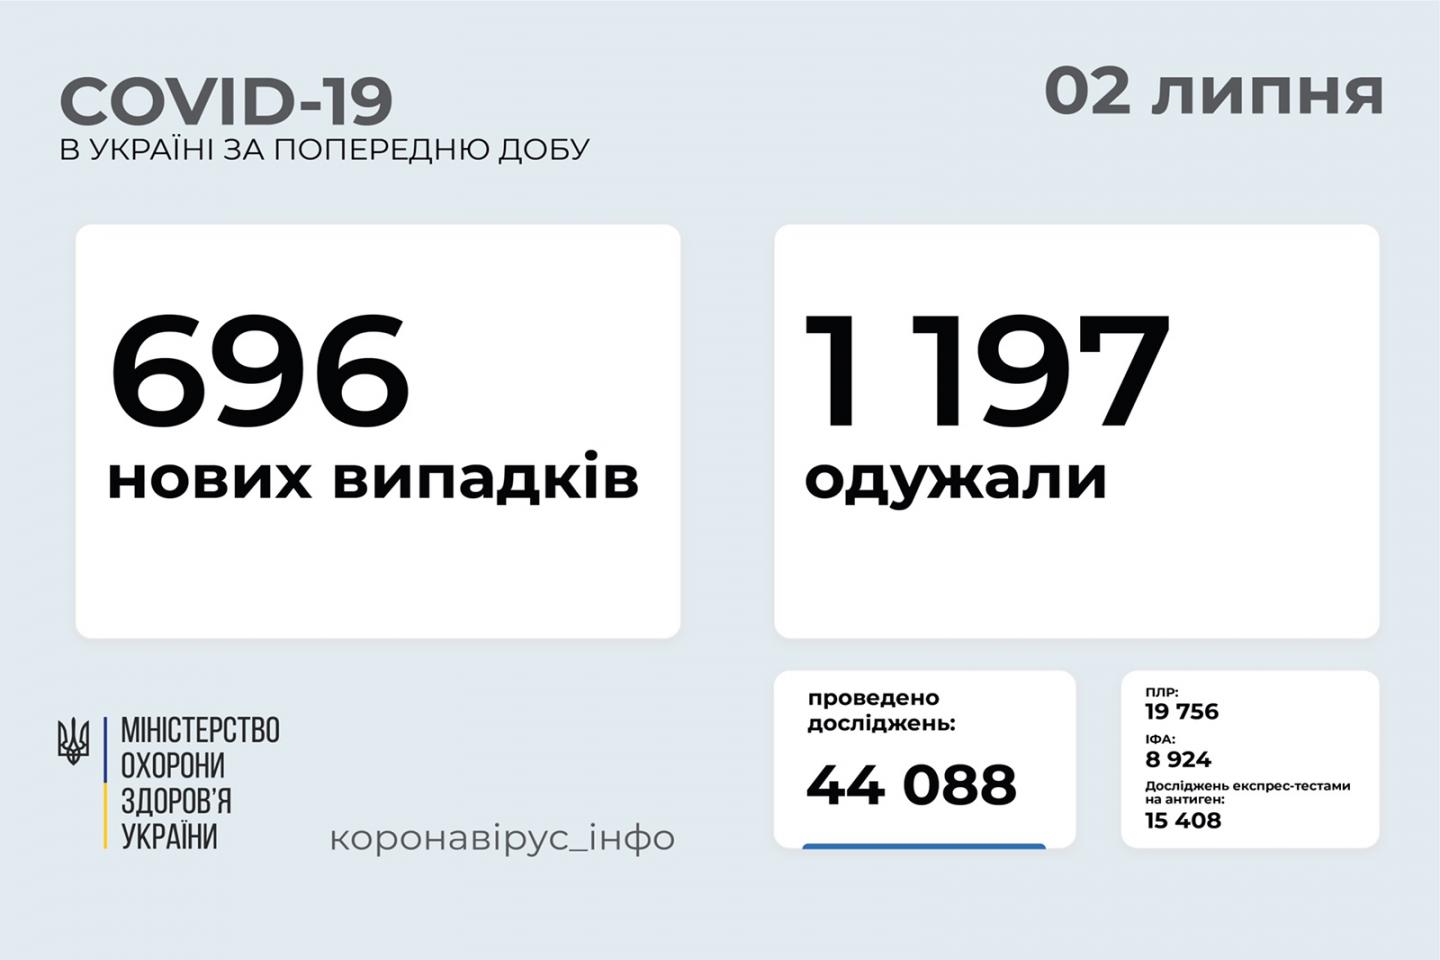 http://dunrada.gov.ua/uploadfile/archive_news/2021/07/02/2021-07-02_380/images/images-84046.jpg